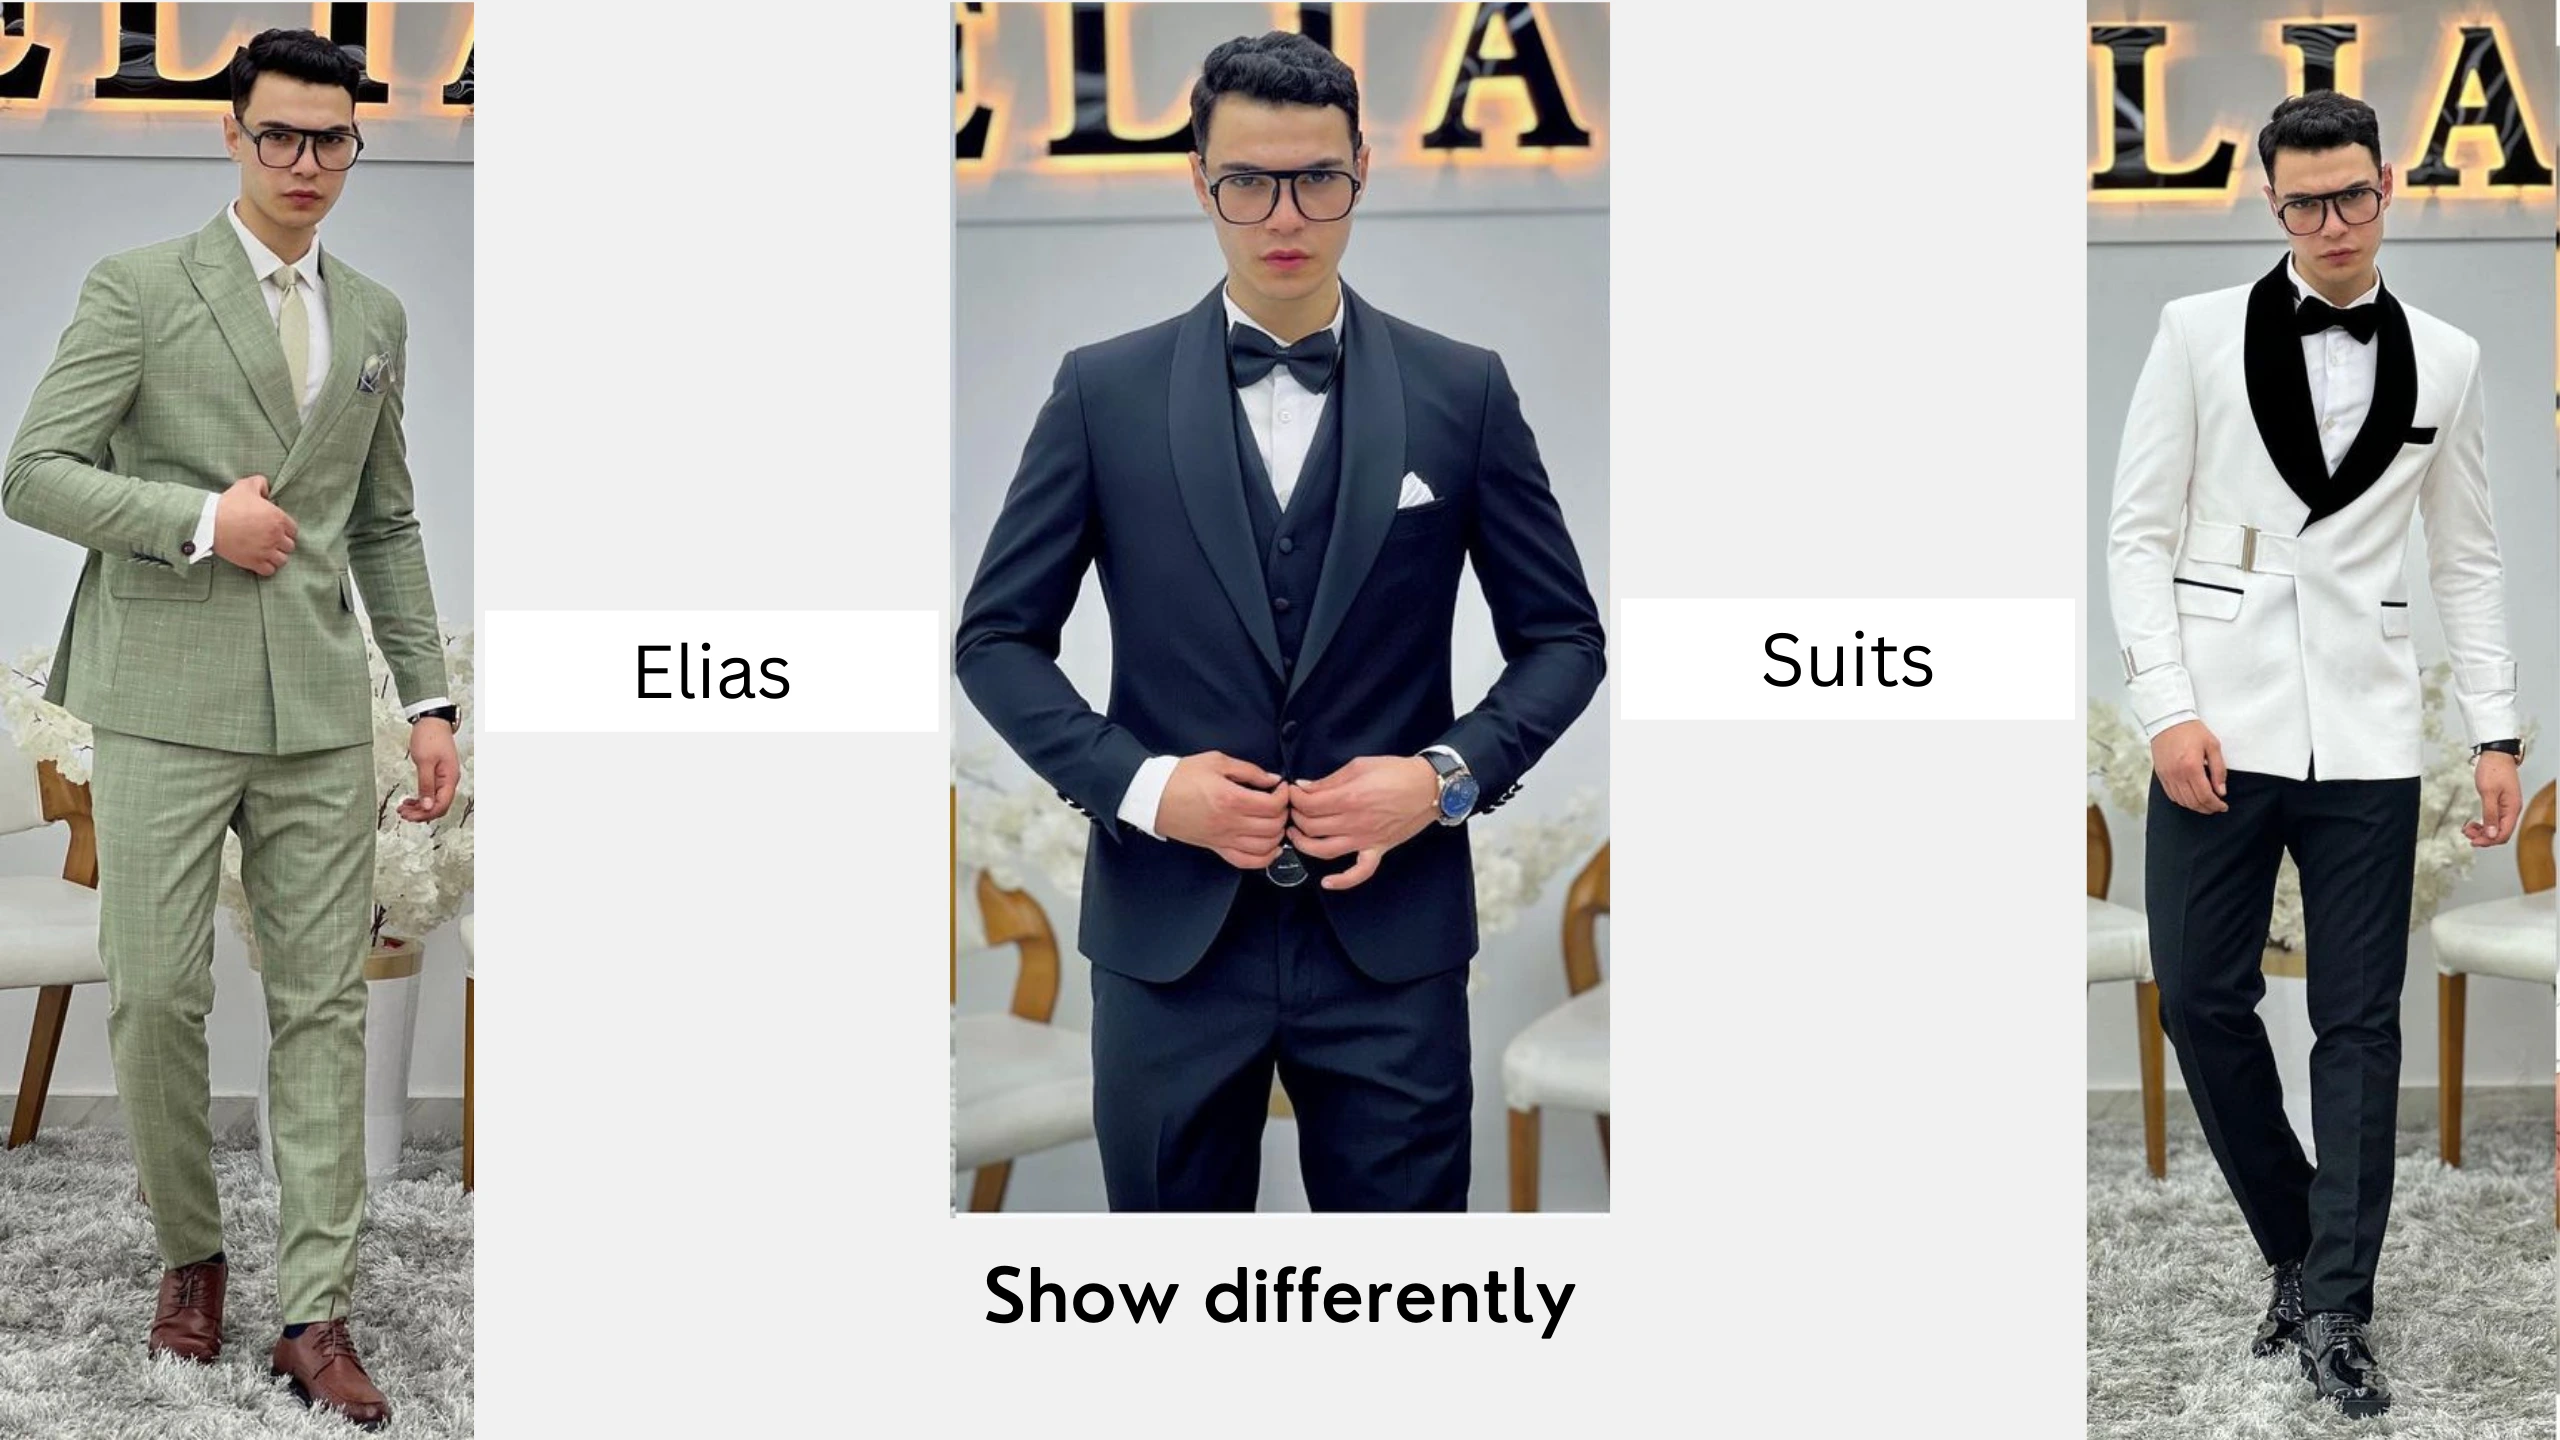 Shop suits - Brand Elias for men suits 